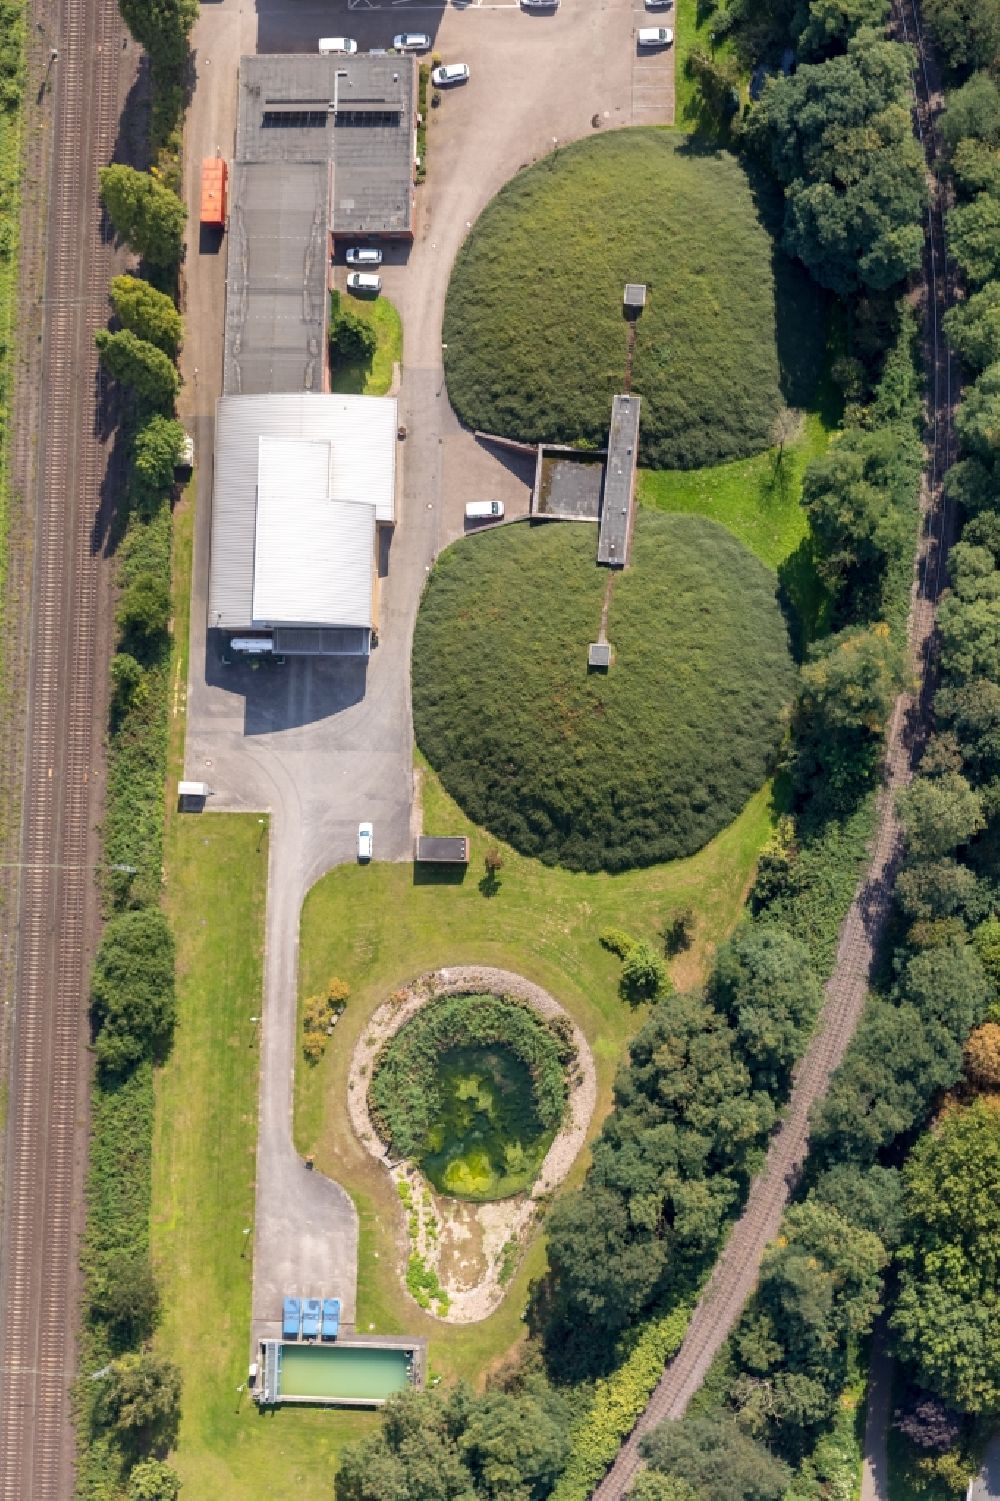 Aerial image Moers - Waterworks - ground storage facility in Moers in the state North Rhine-Westphalia, Germany